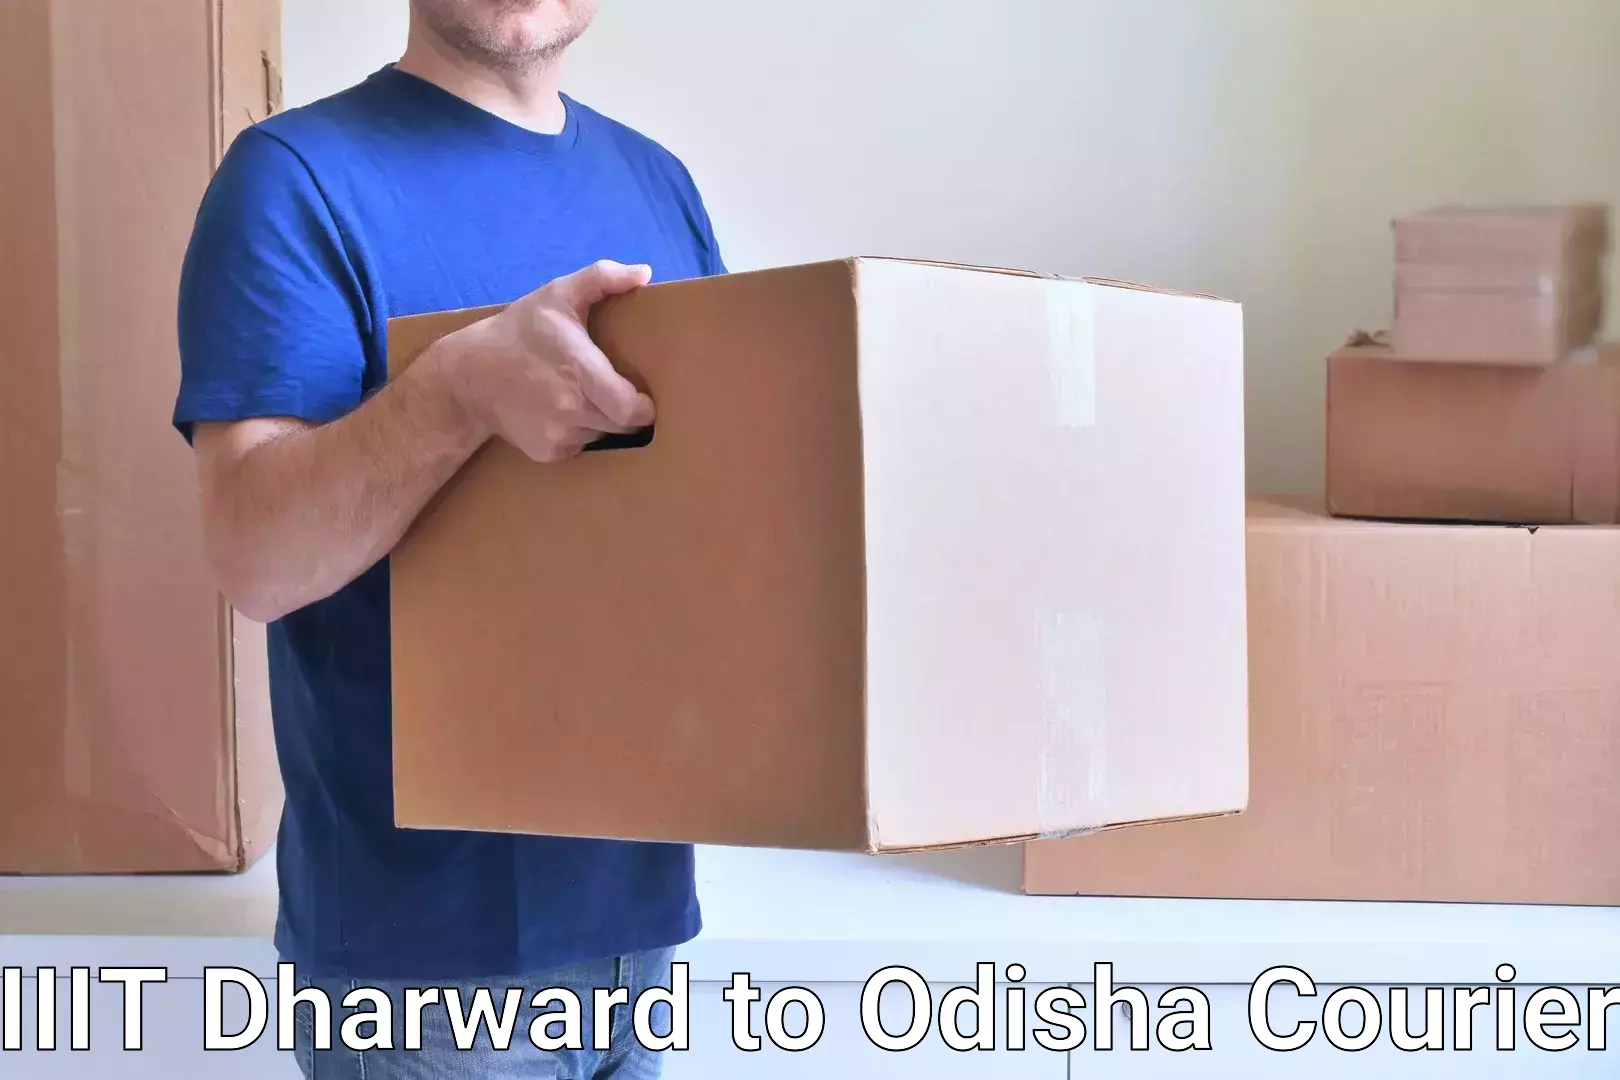 Courier service efficiency IIIT Dharward to Malkangiri